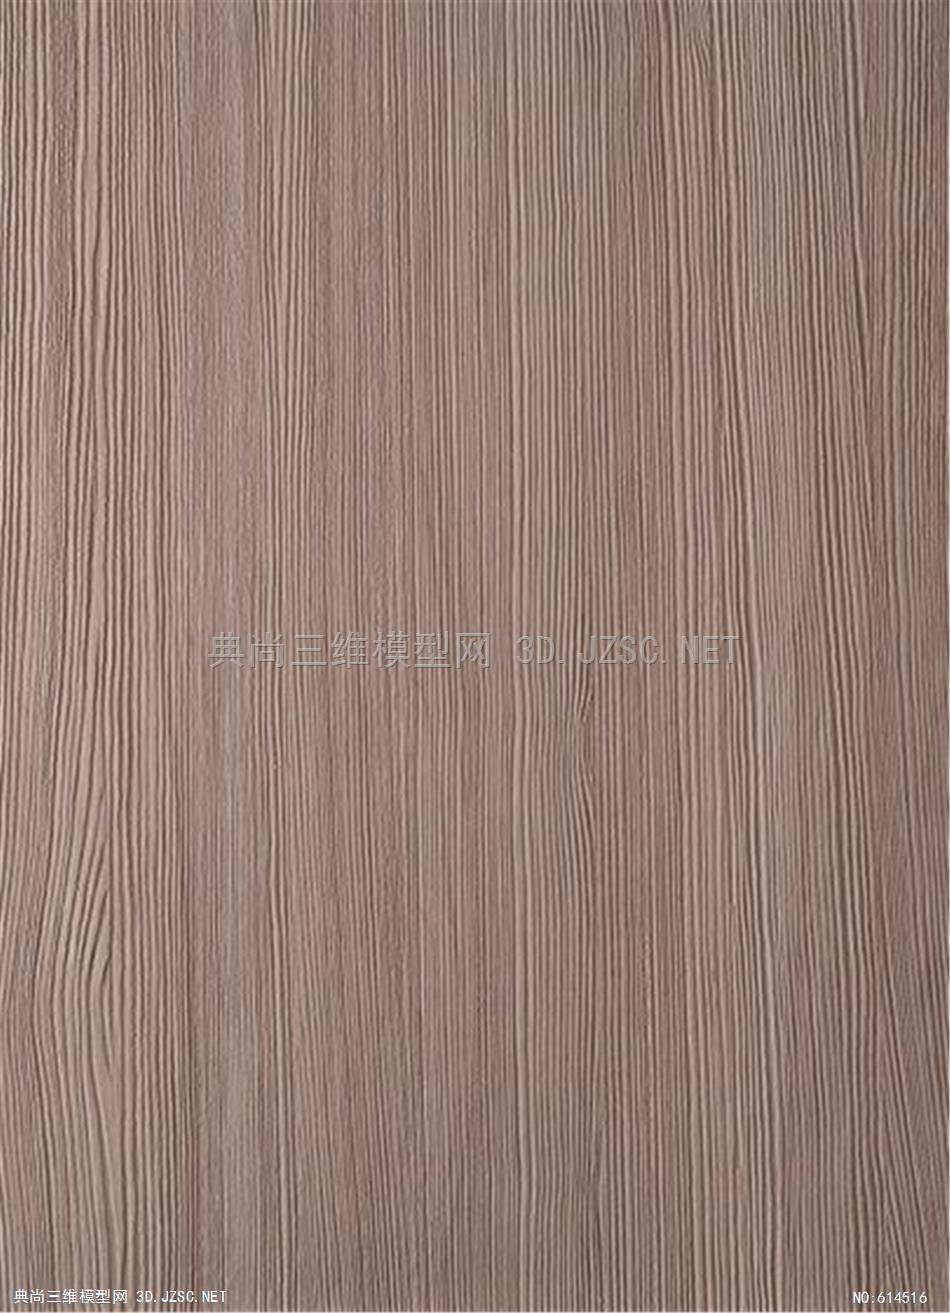 木饰面 木纹 木材  高清材质贴图 (326)